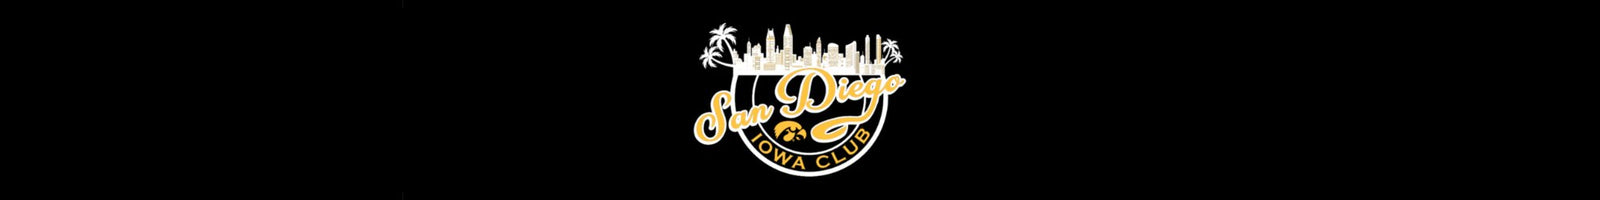 San Diego Iowa Club